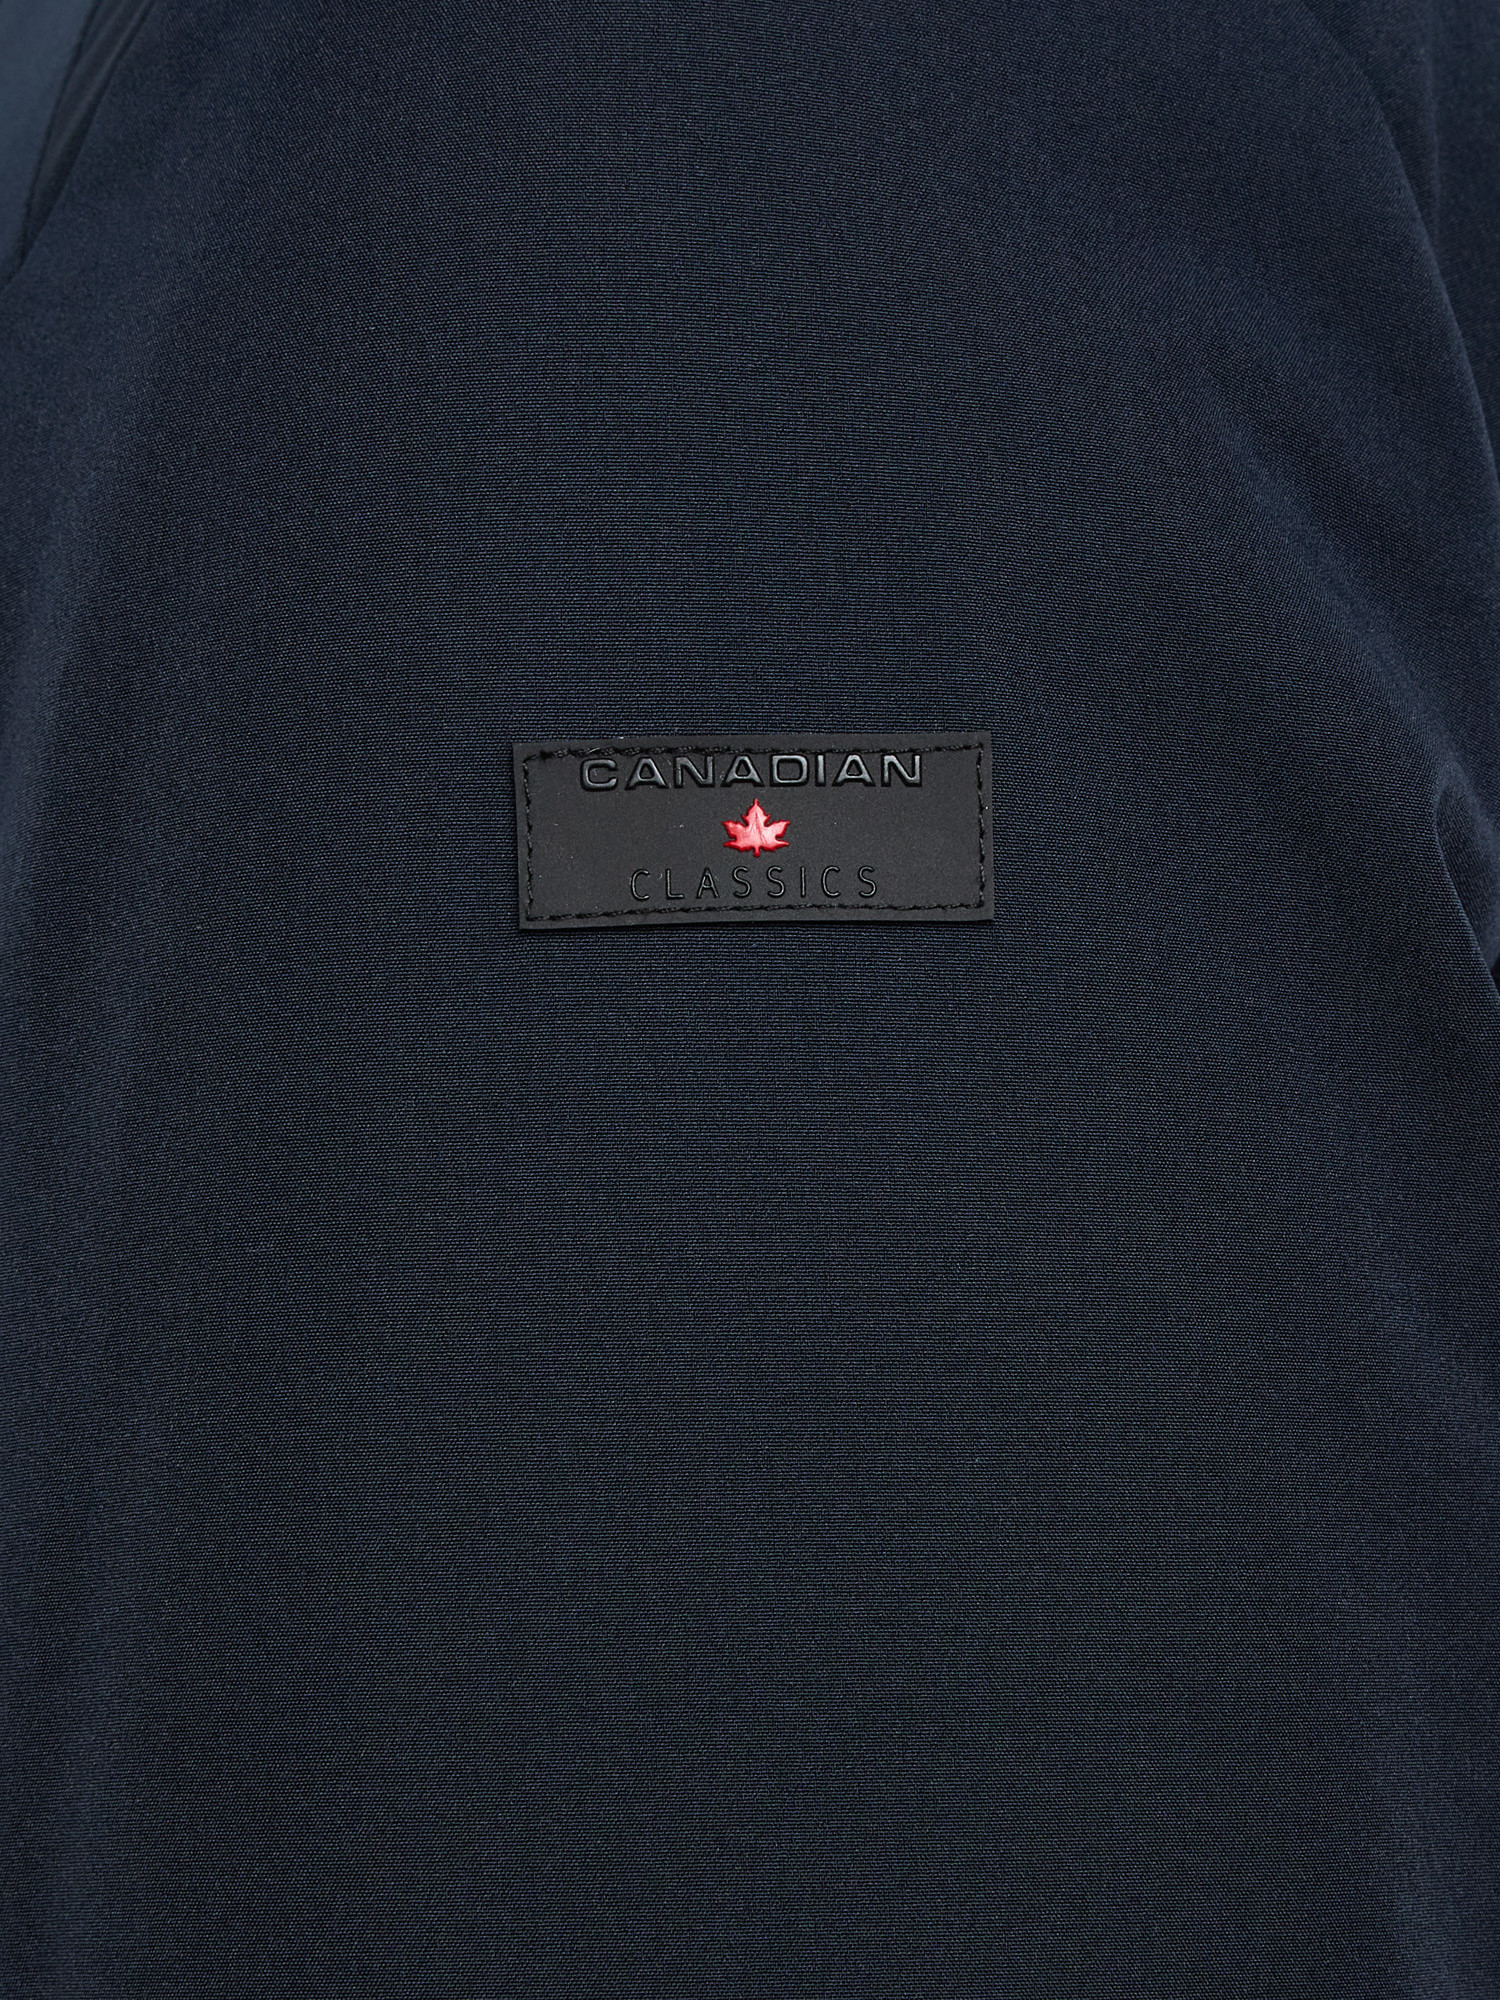 Canadian - City Parka Jacket, Dark Blue, large image number 2